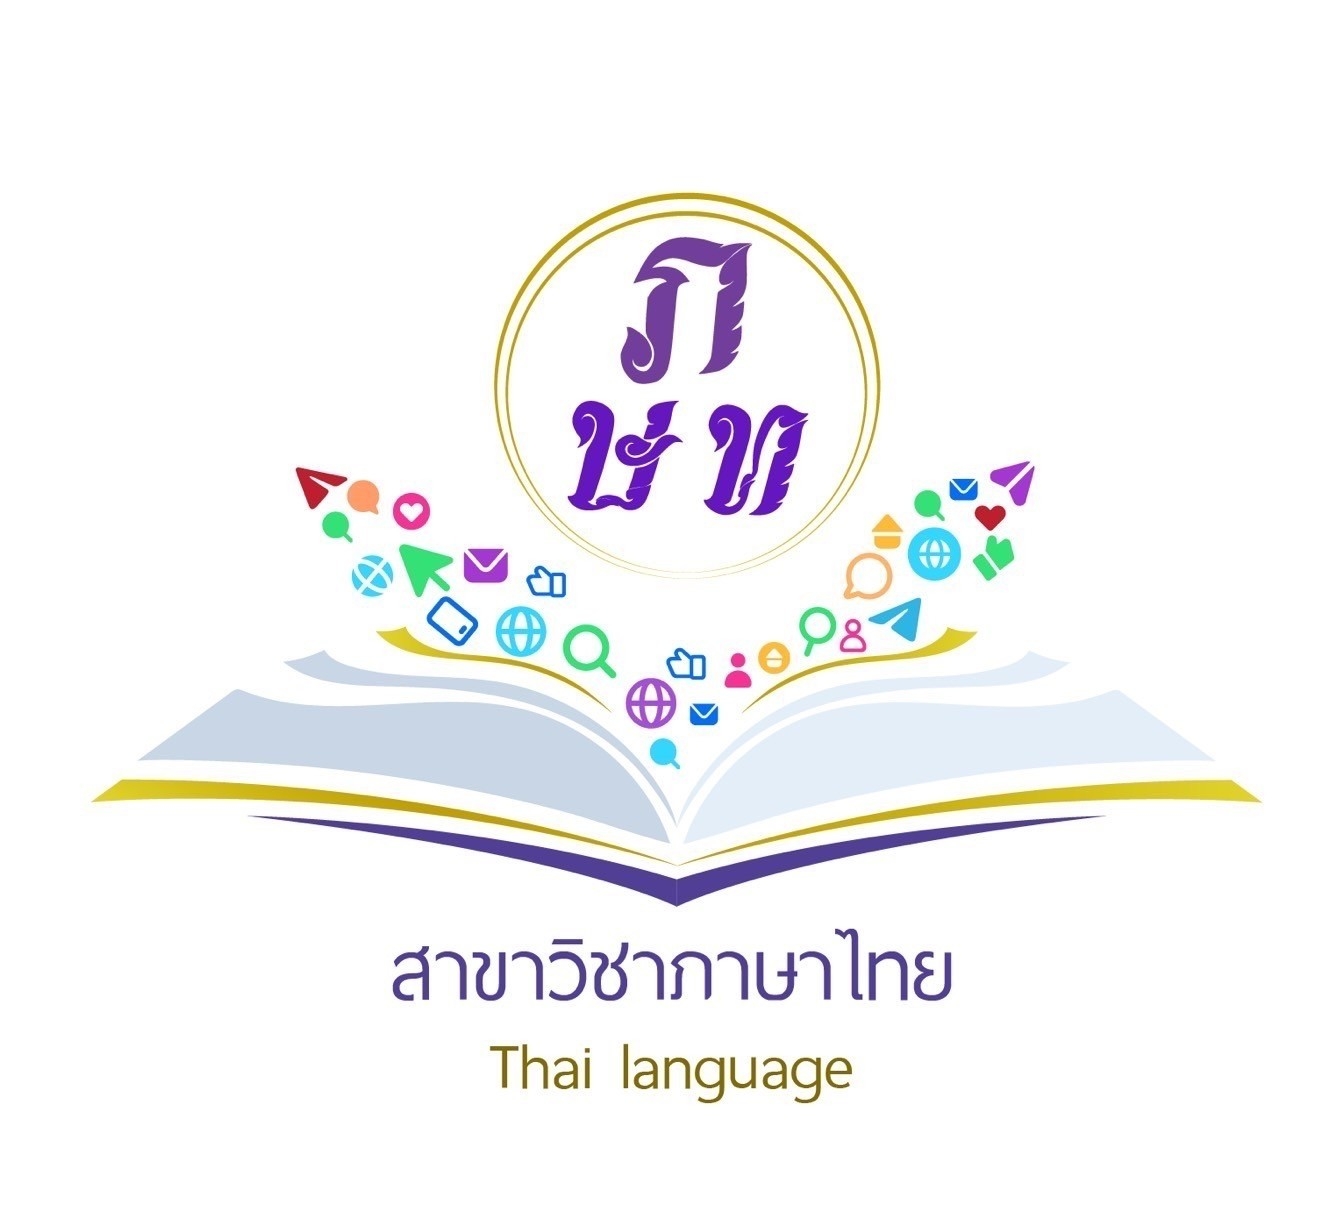 หลักสูตรศิลปศาสตรบัณฑิต สาขาวิชาภาษาไทย